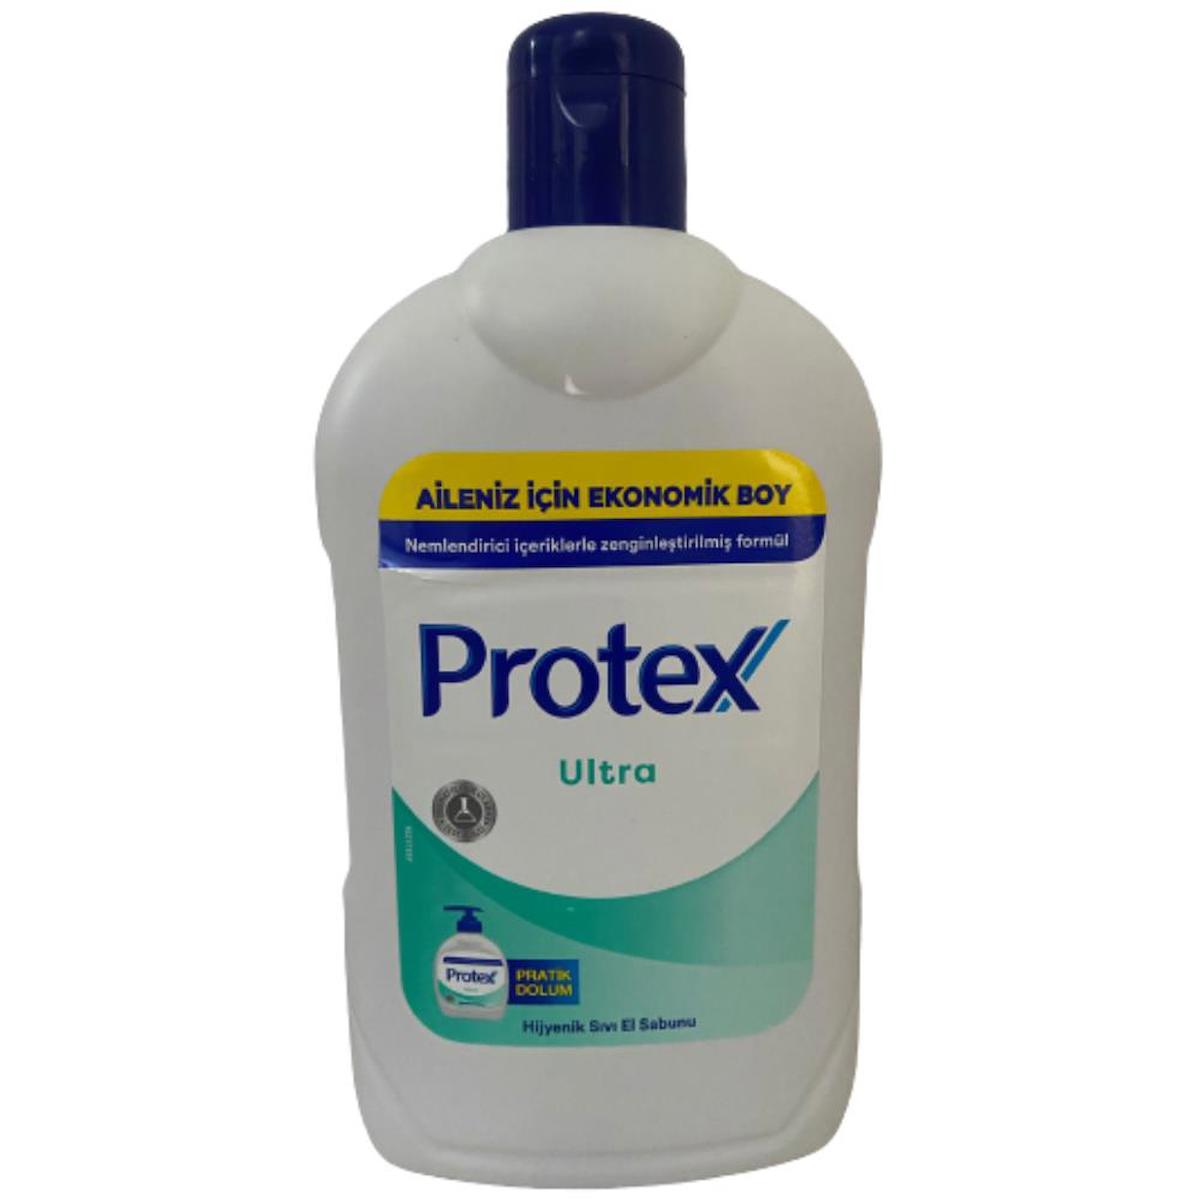 Protex Ultra Nemlendiricili Antibakteriyel Sıvı Sabun 1.5 lt Tekli